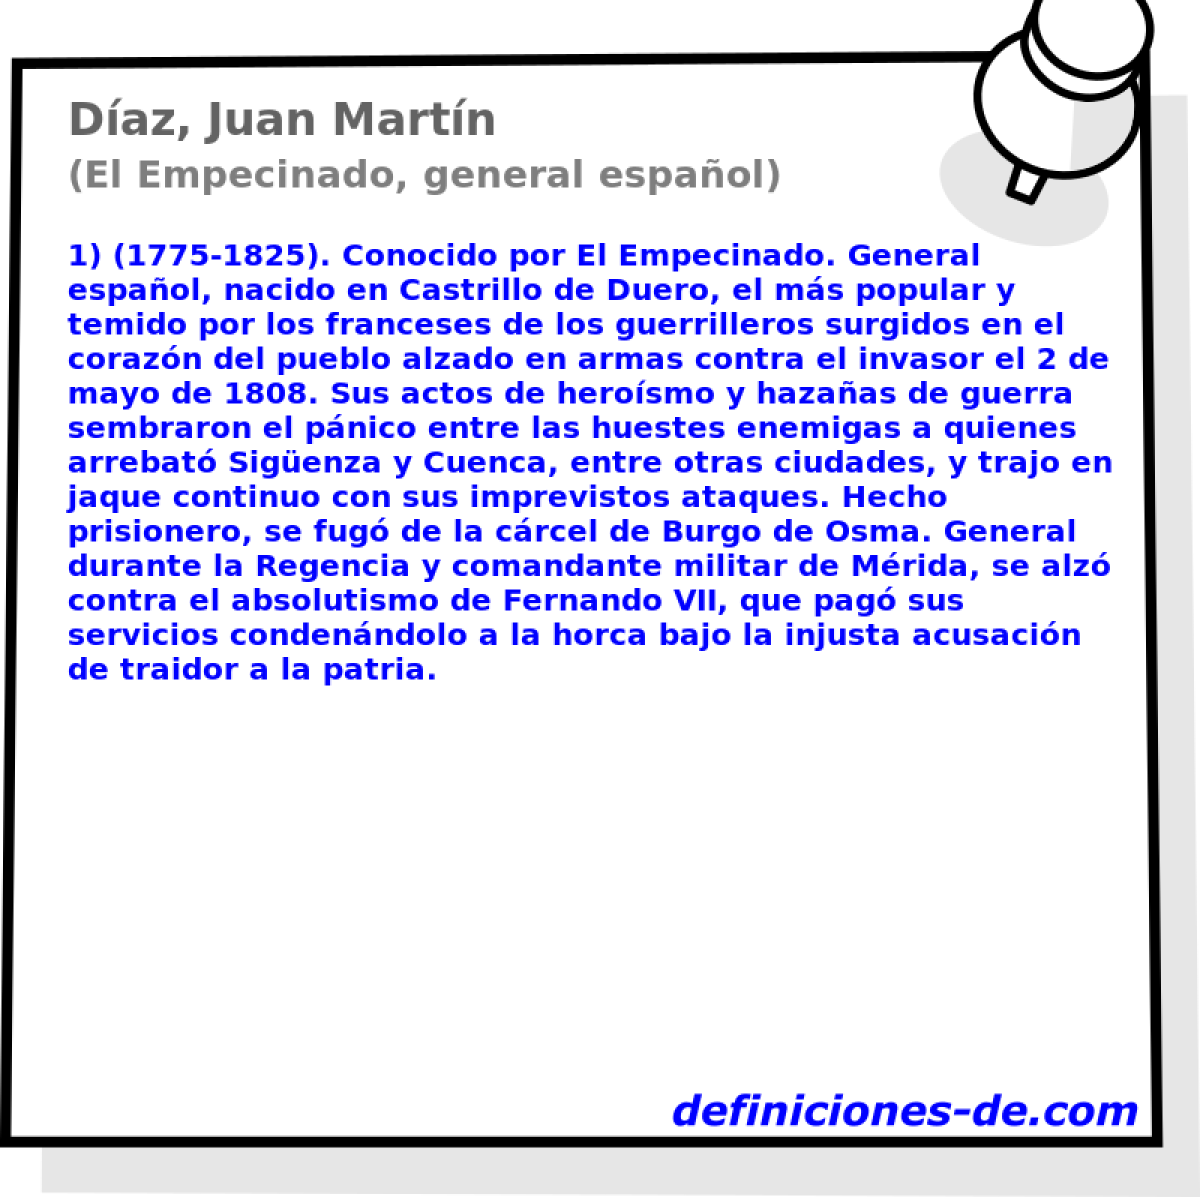 Daz, Juan Martn (El Empecinado, general espaol)